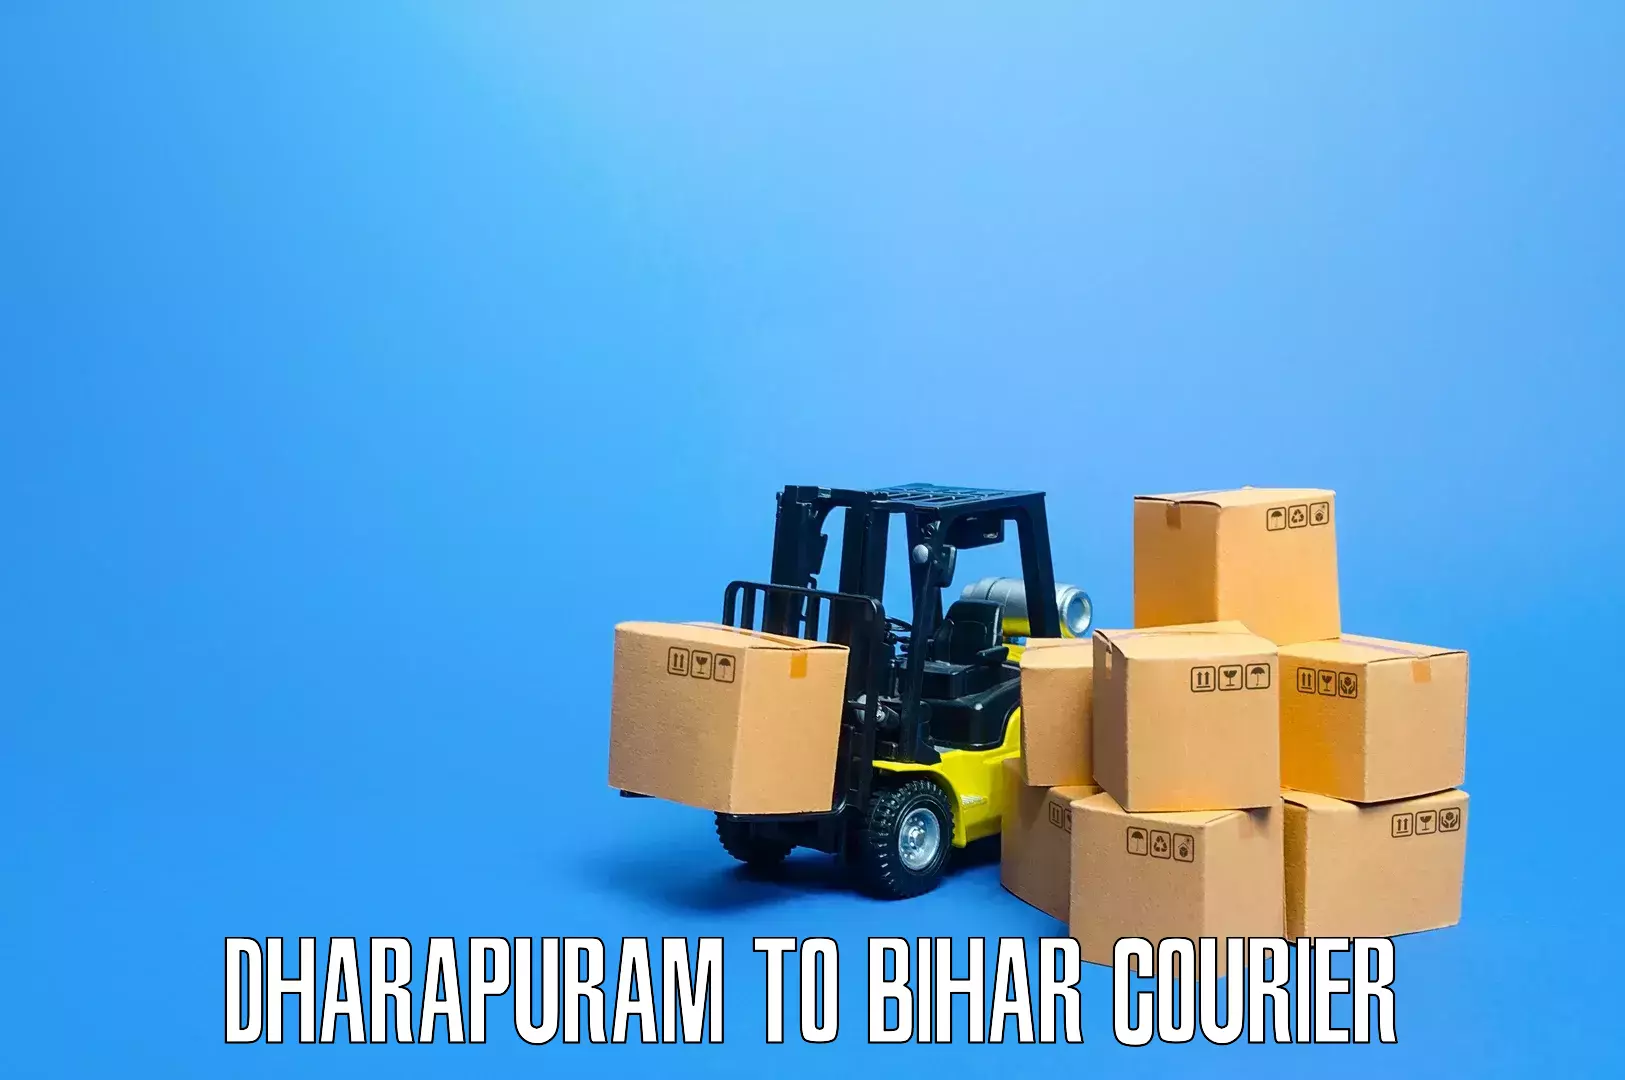 Professional packing services Dharapuram to Maranga